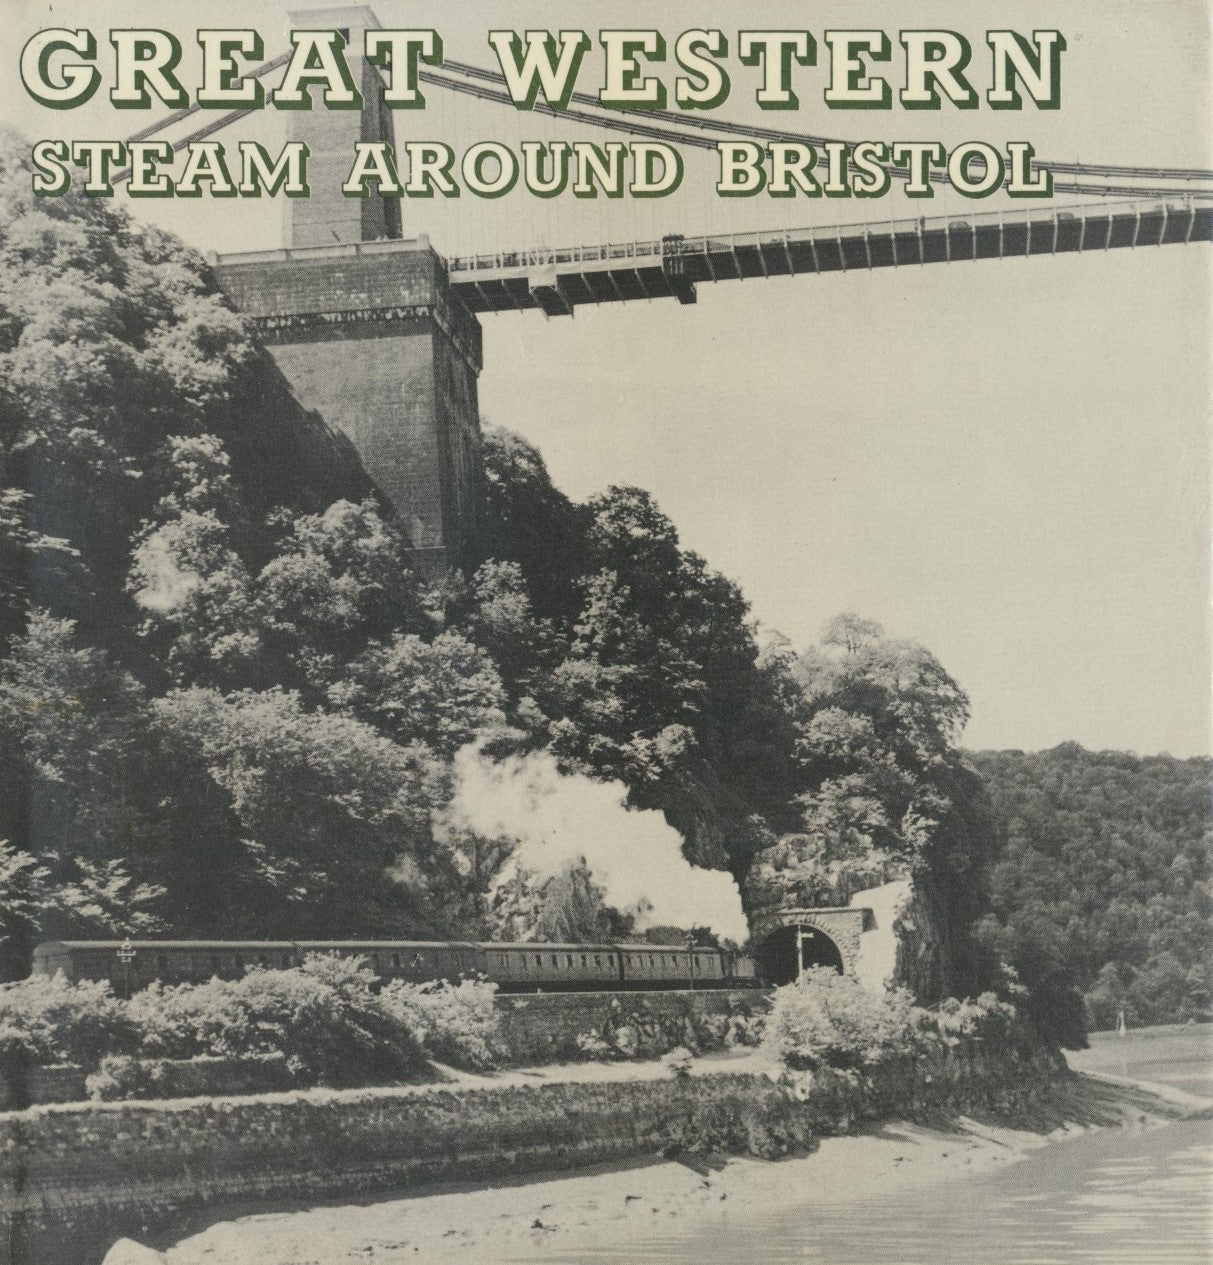 Great Western Steam Around Bristol